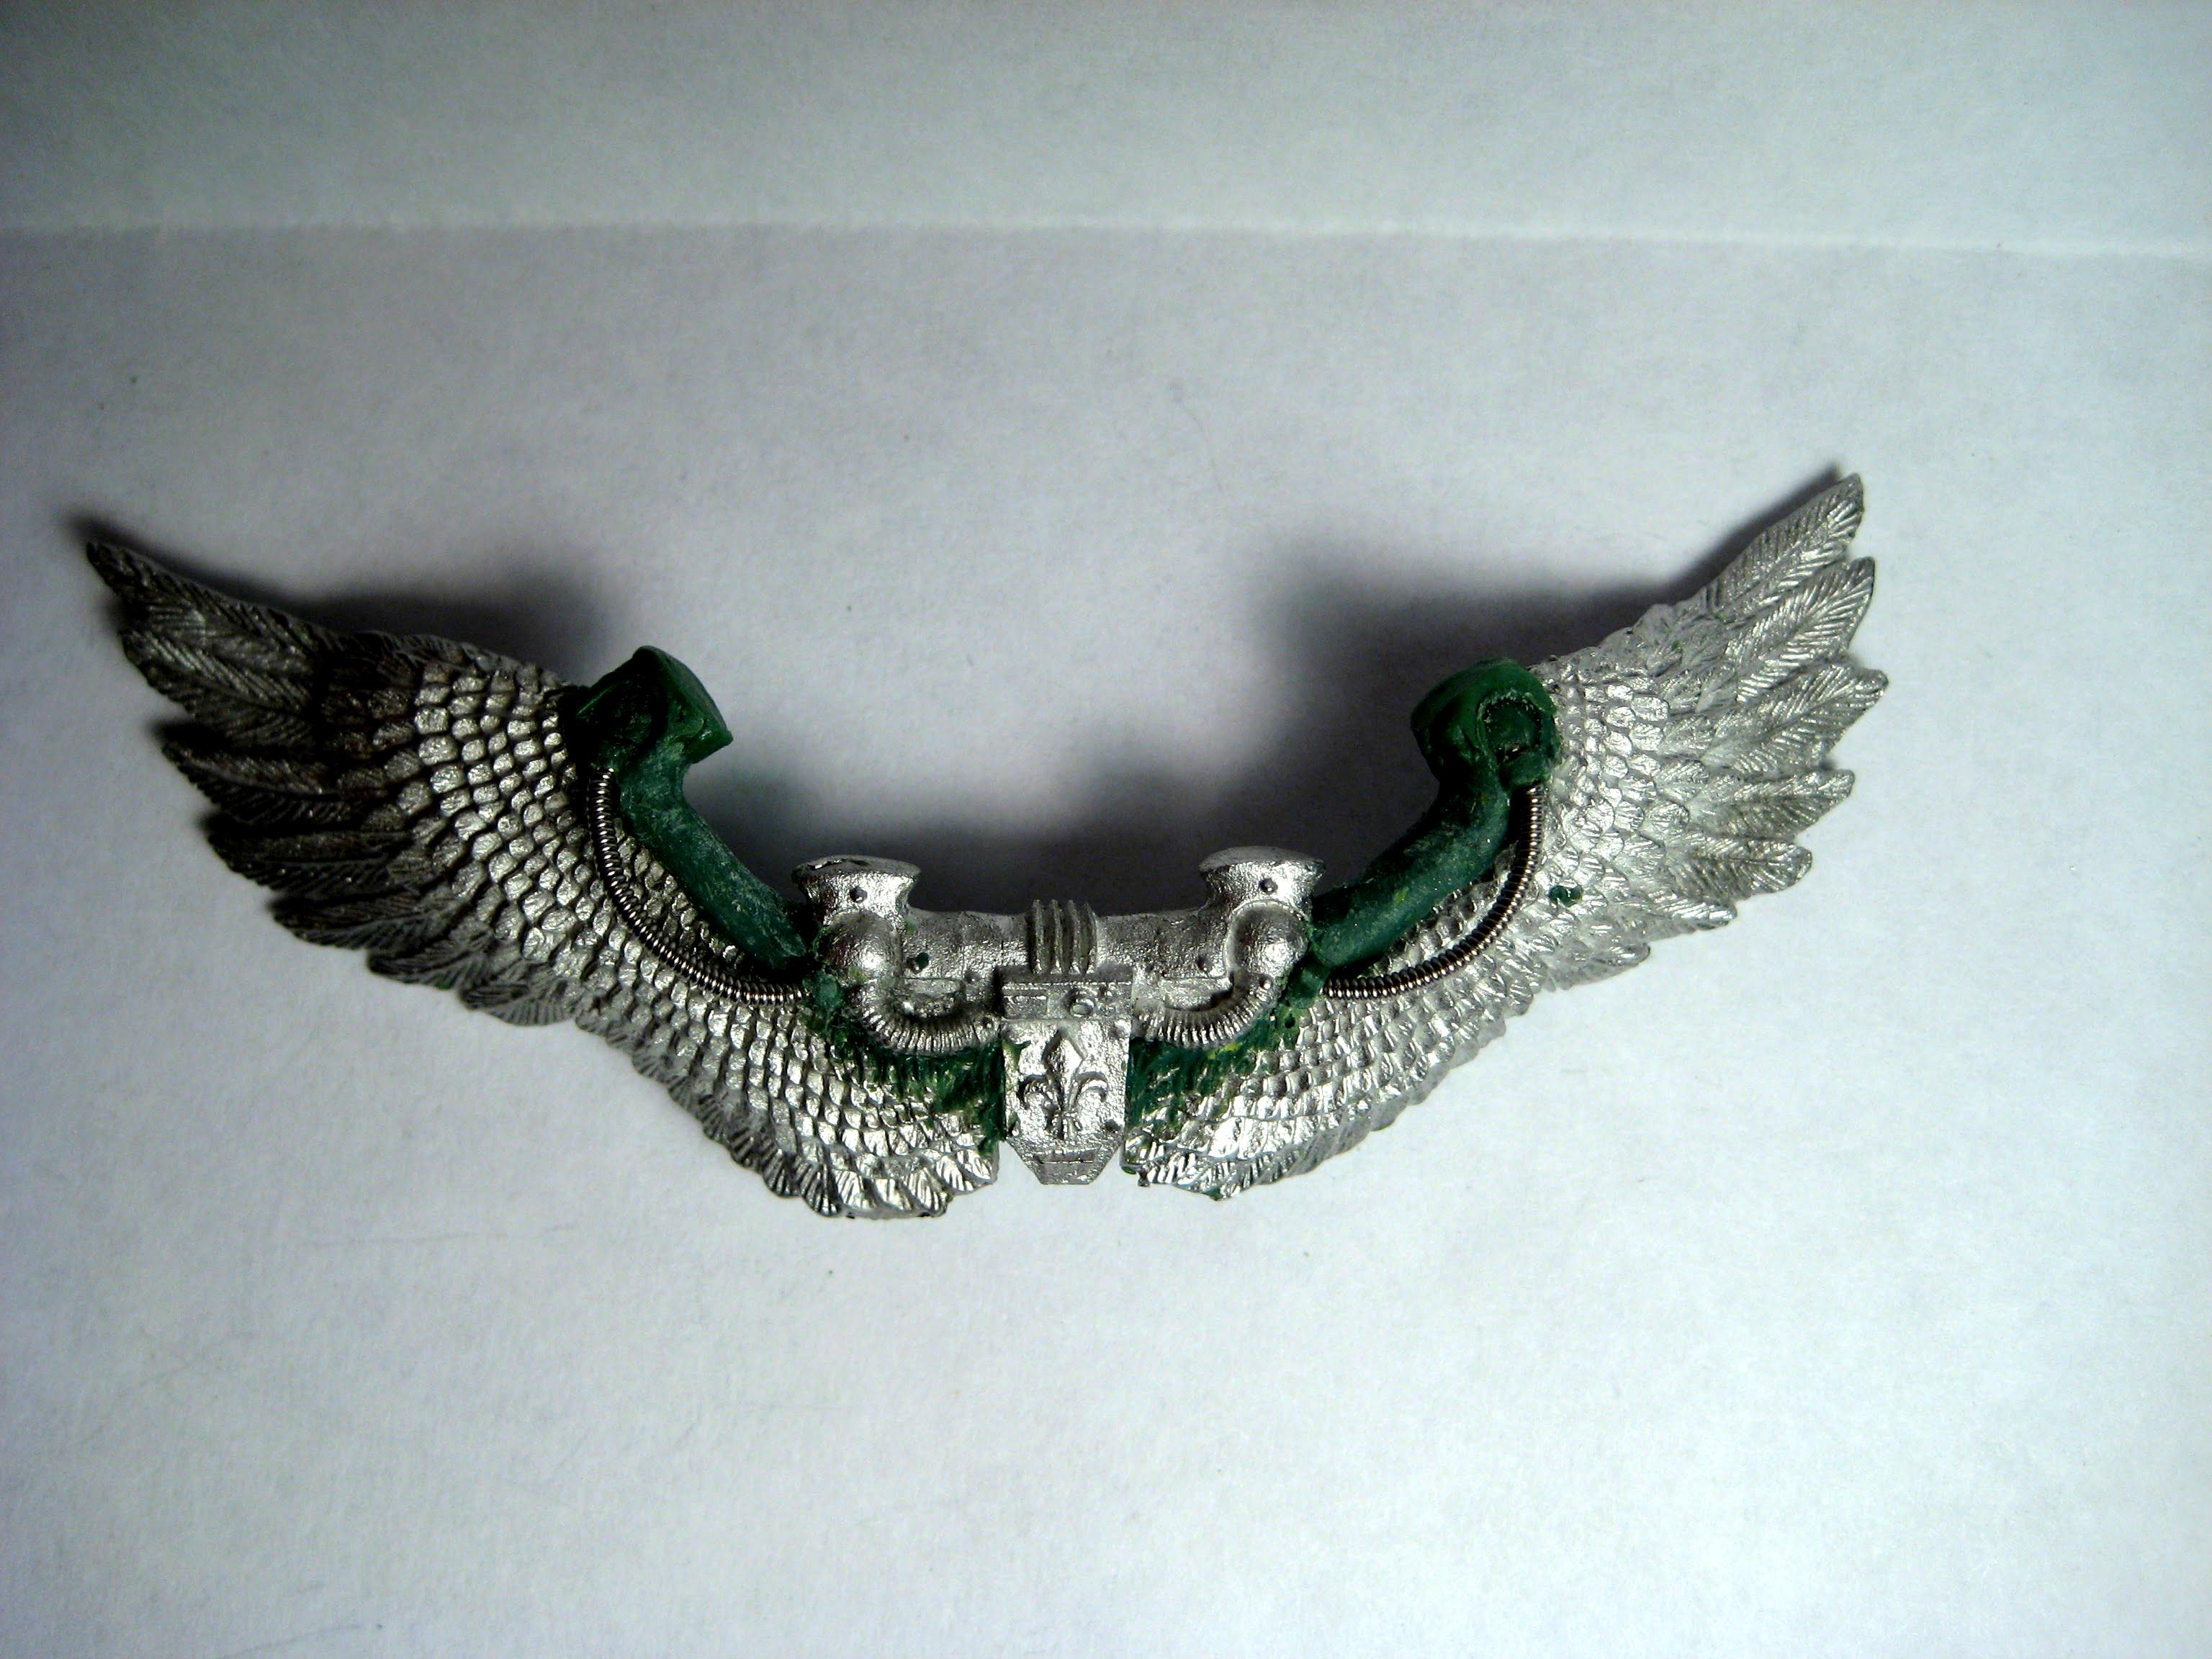 Celestine's wings, rear